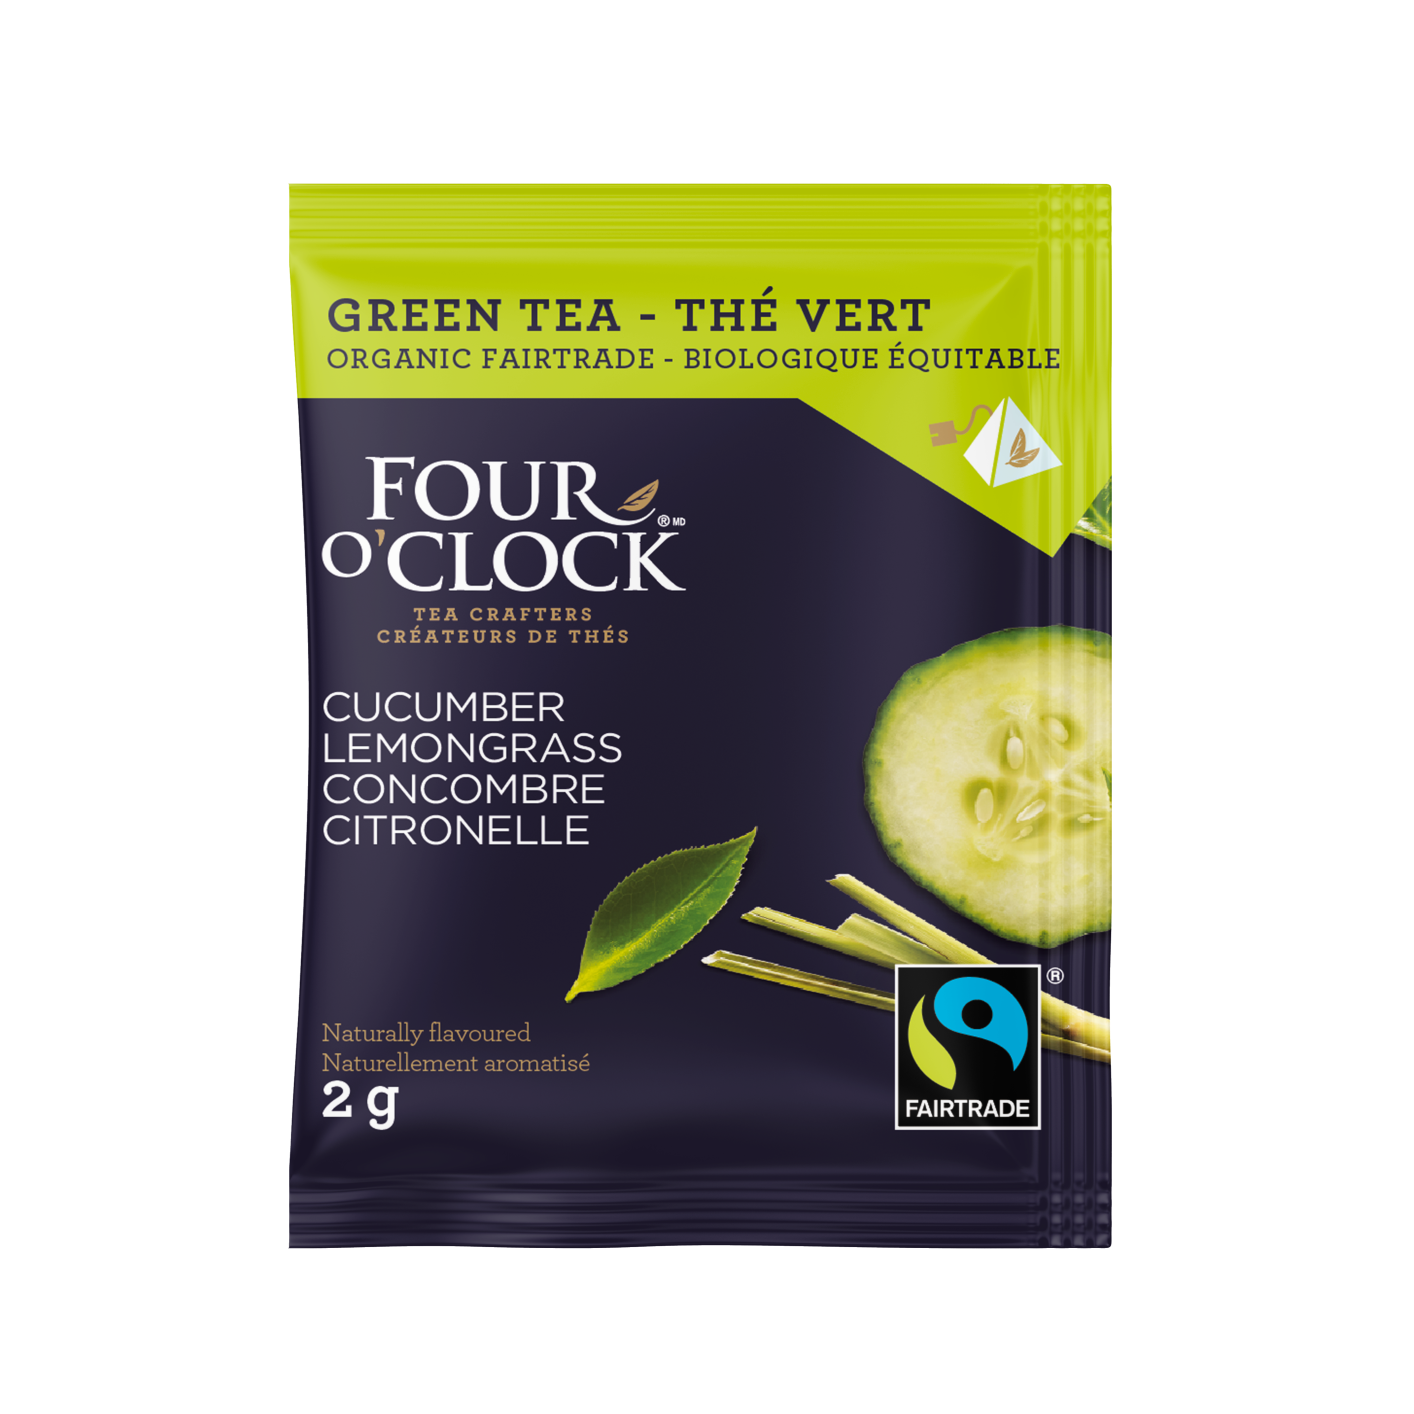 Cucumber Lemongrass Organic Fairtrade Green Tea